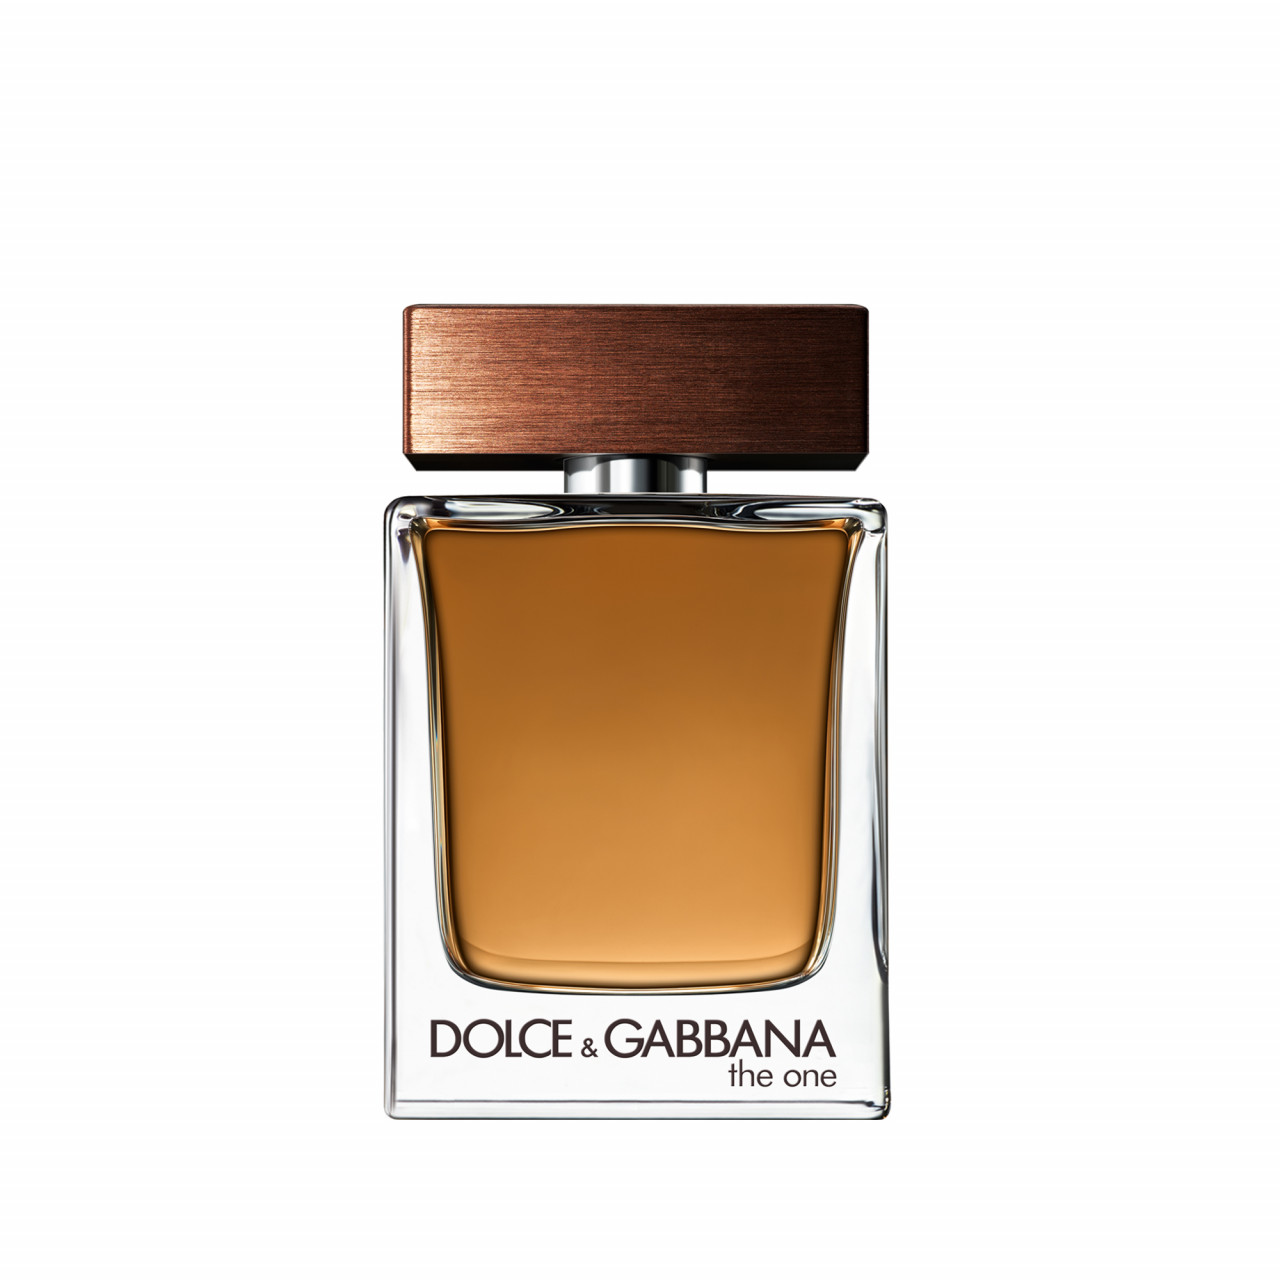 Dolce&Gabbana - The One for Men Eau de Toilette -  30 ml